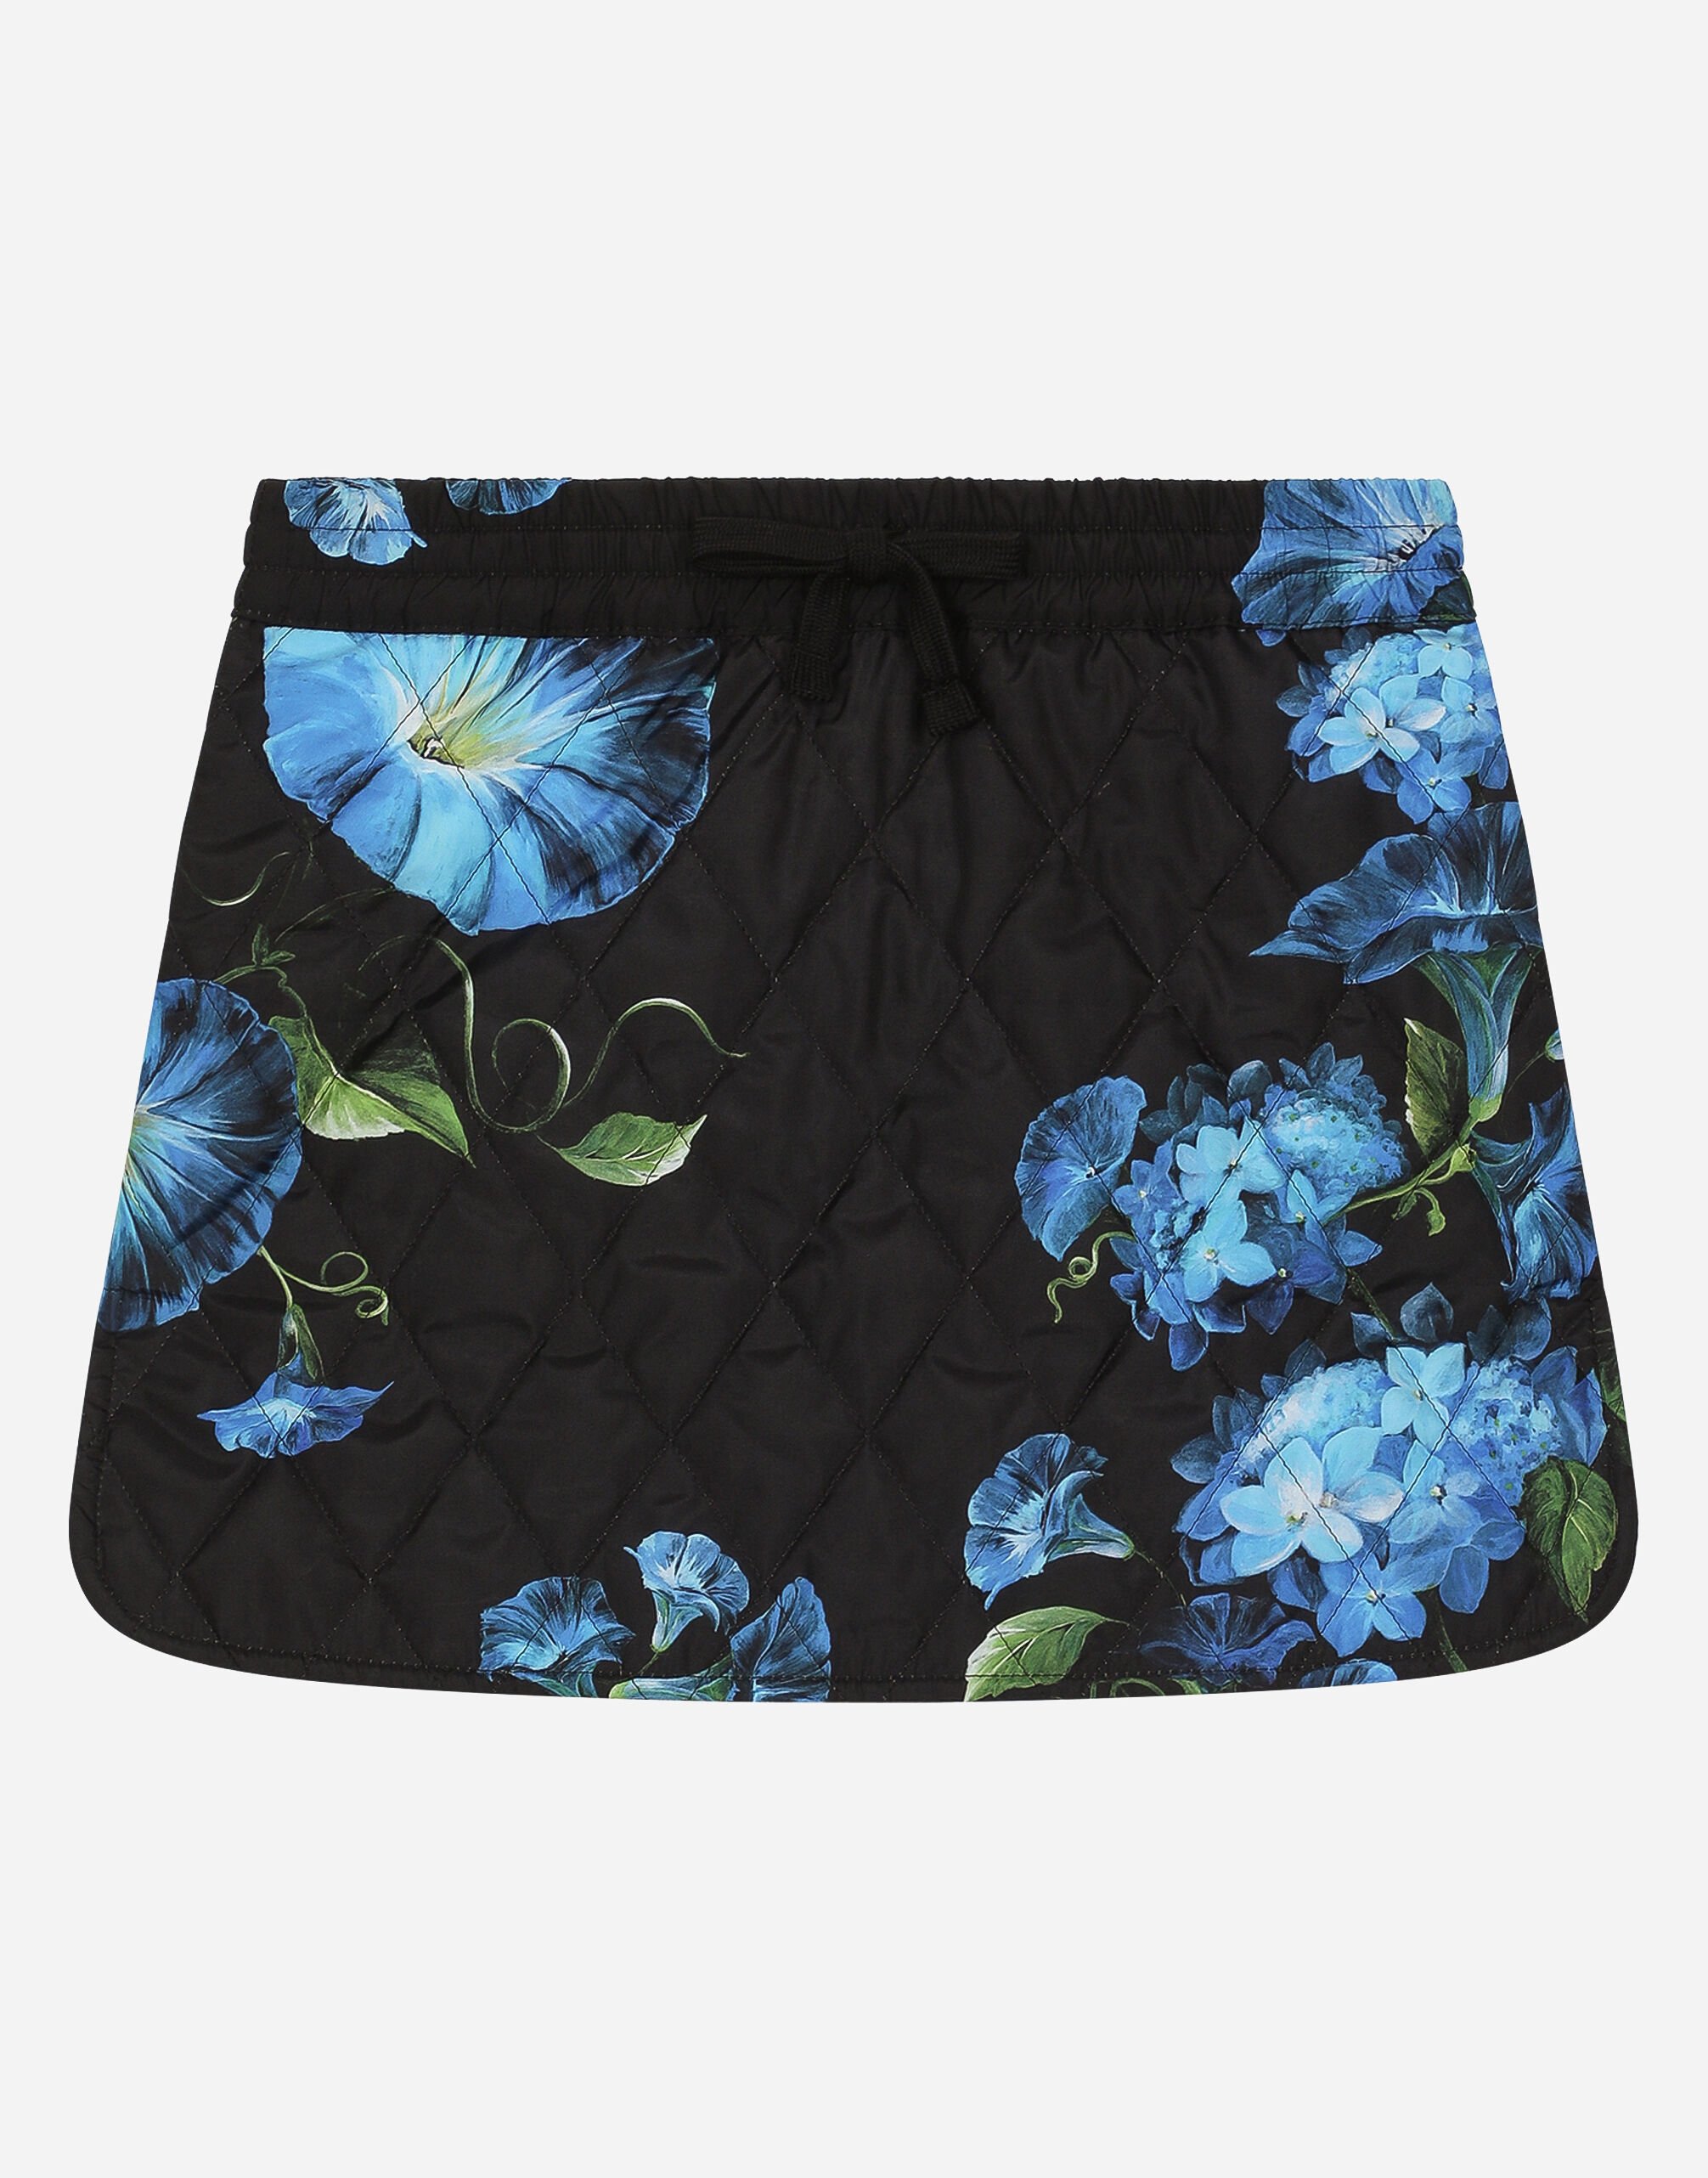 Dolce & Gabbana Short nylon skirt with bluebell print Imprima L54I94HS5Q4